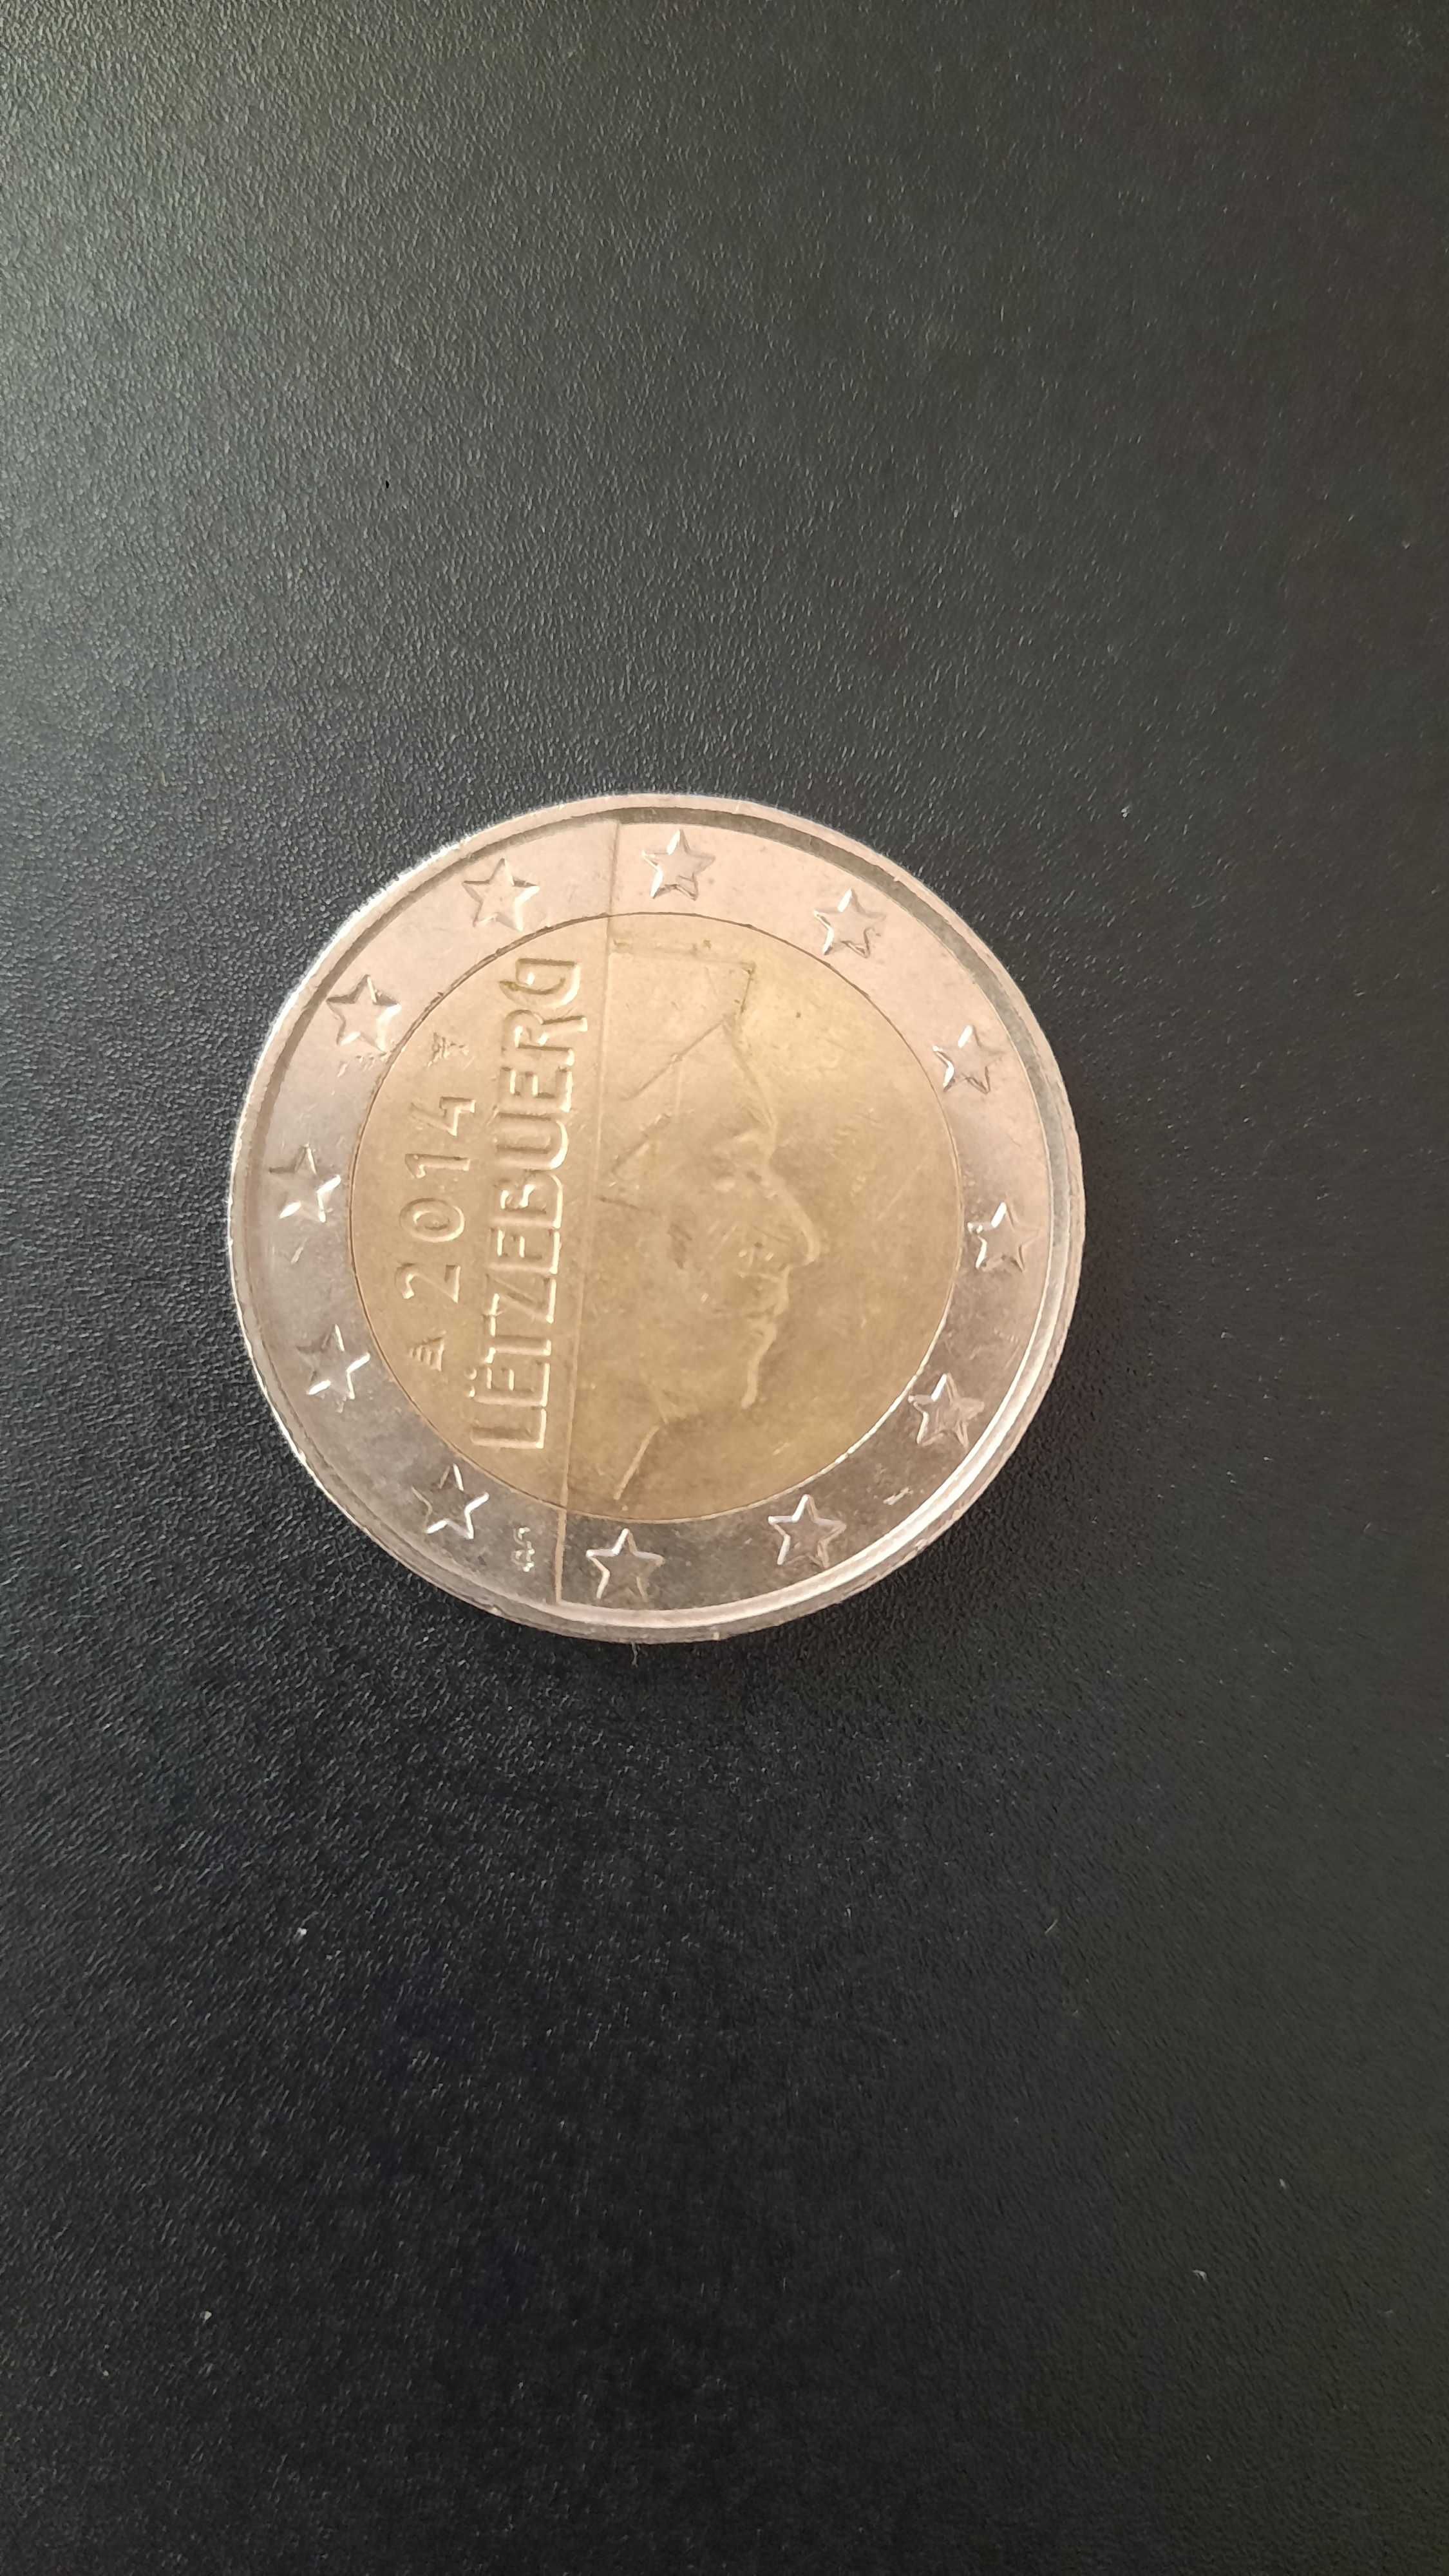 Moedas de 2€ do Luxemburgo